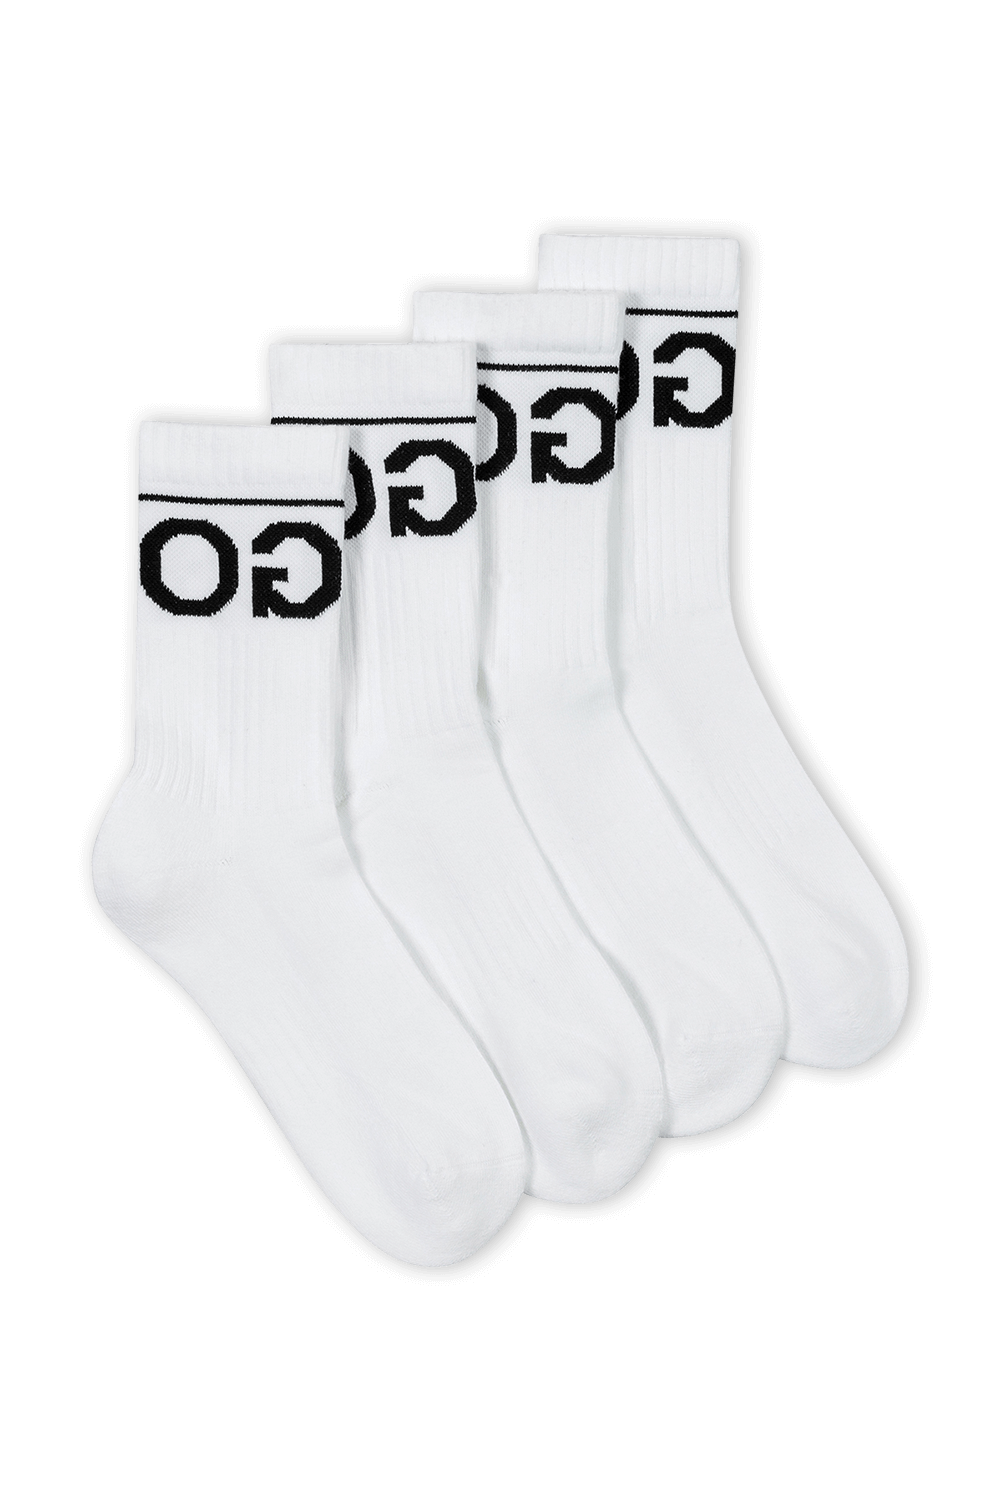 מארז שלושה זוגות גרביים לבנים עם לוגו מהופך HUGO